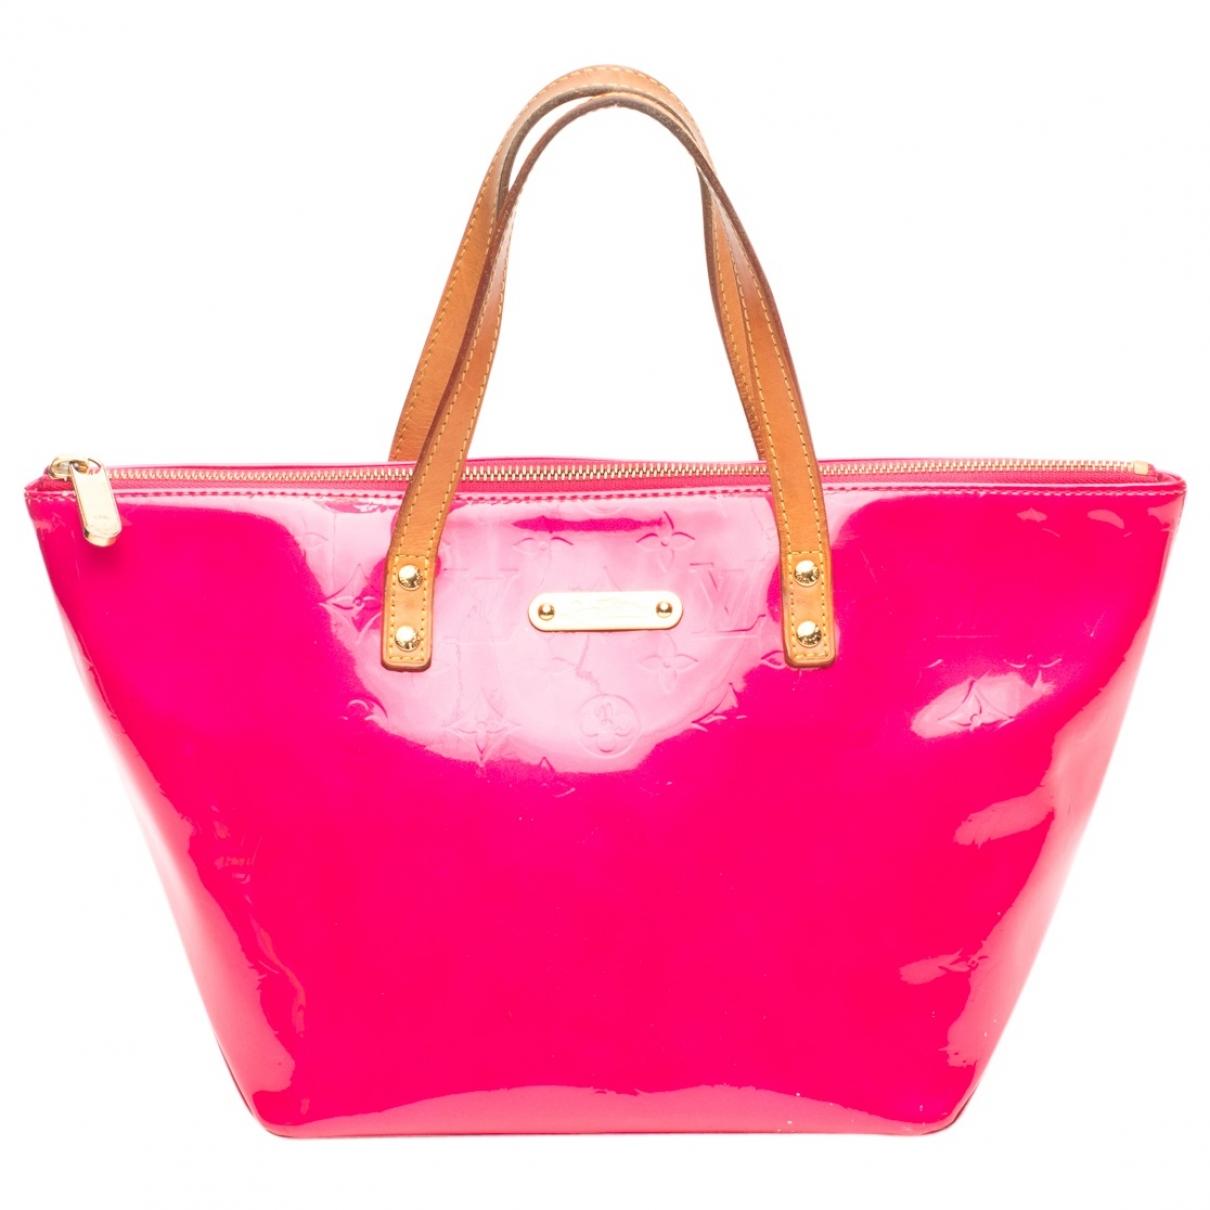 Pink Leather Lv Bag | semashow.com